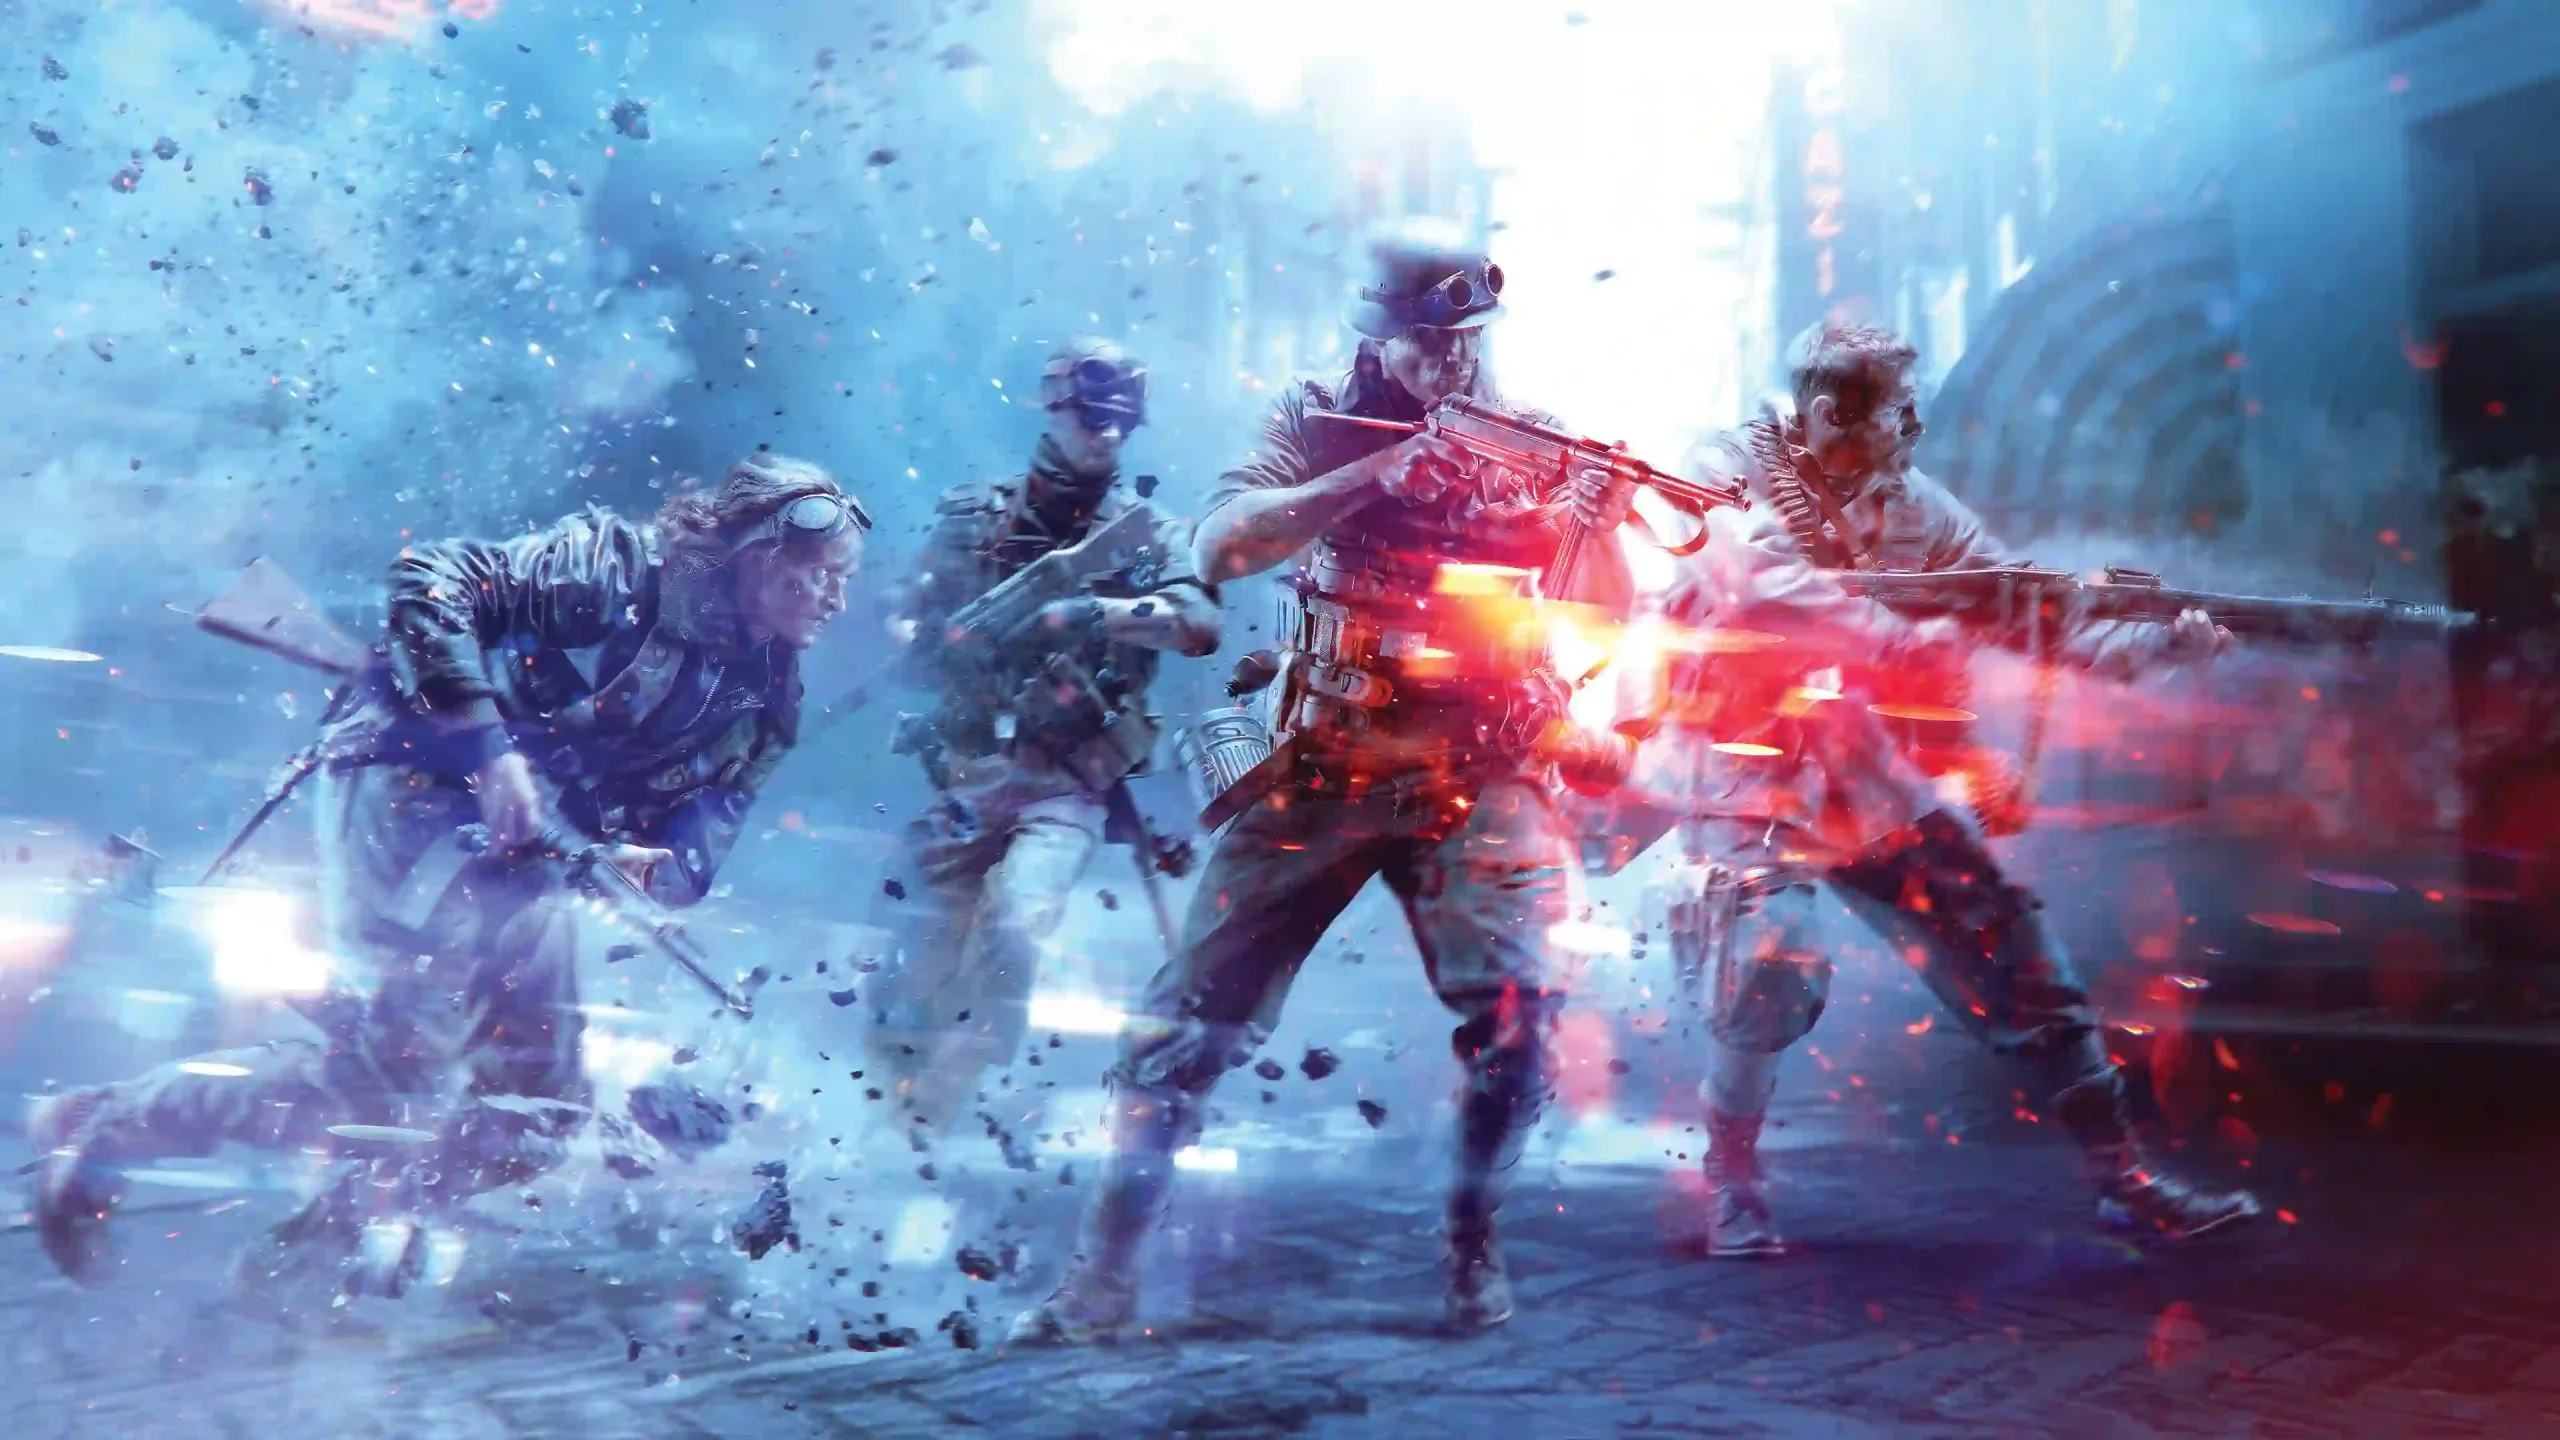 بازی بعدی Battlefield می تواند “واقعی ترین اثرات تخریبی در صنعت بازی داشته باشد